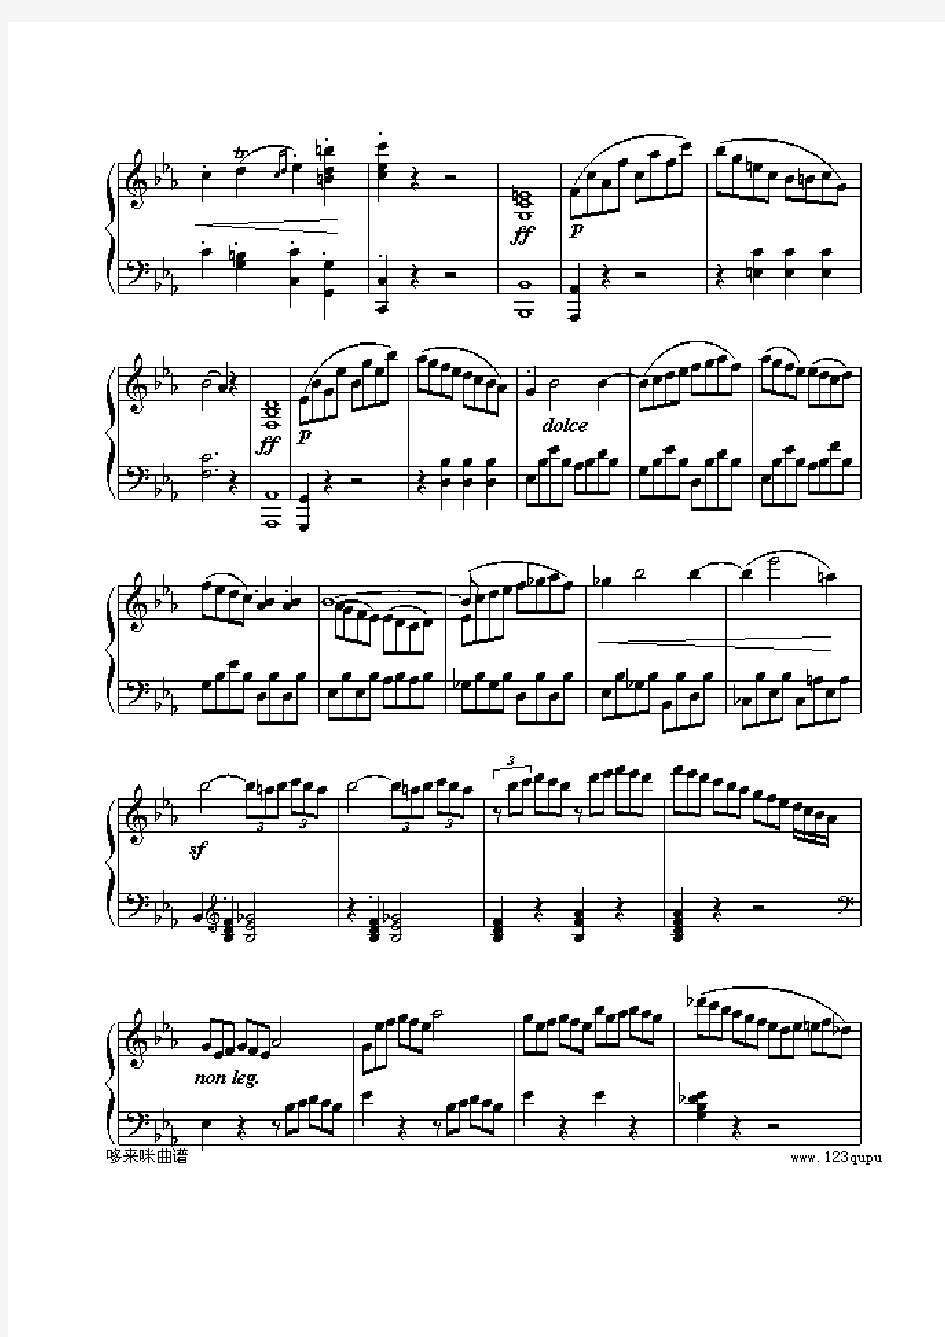 贝多芬 - c小调第八钢琴奏鸣曲第三乐章(作品13号“悲怆”)钢琴谱